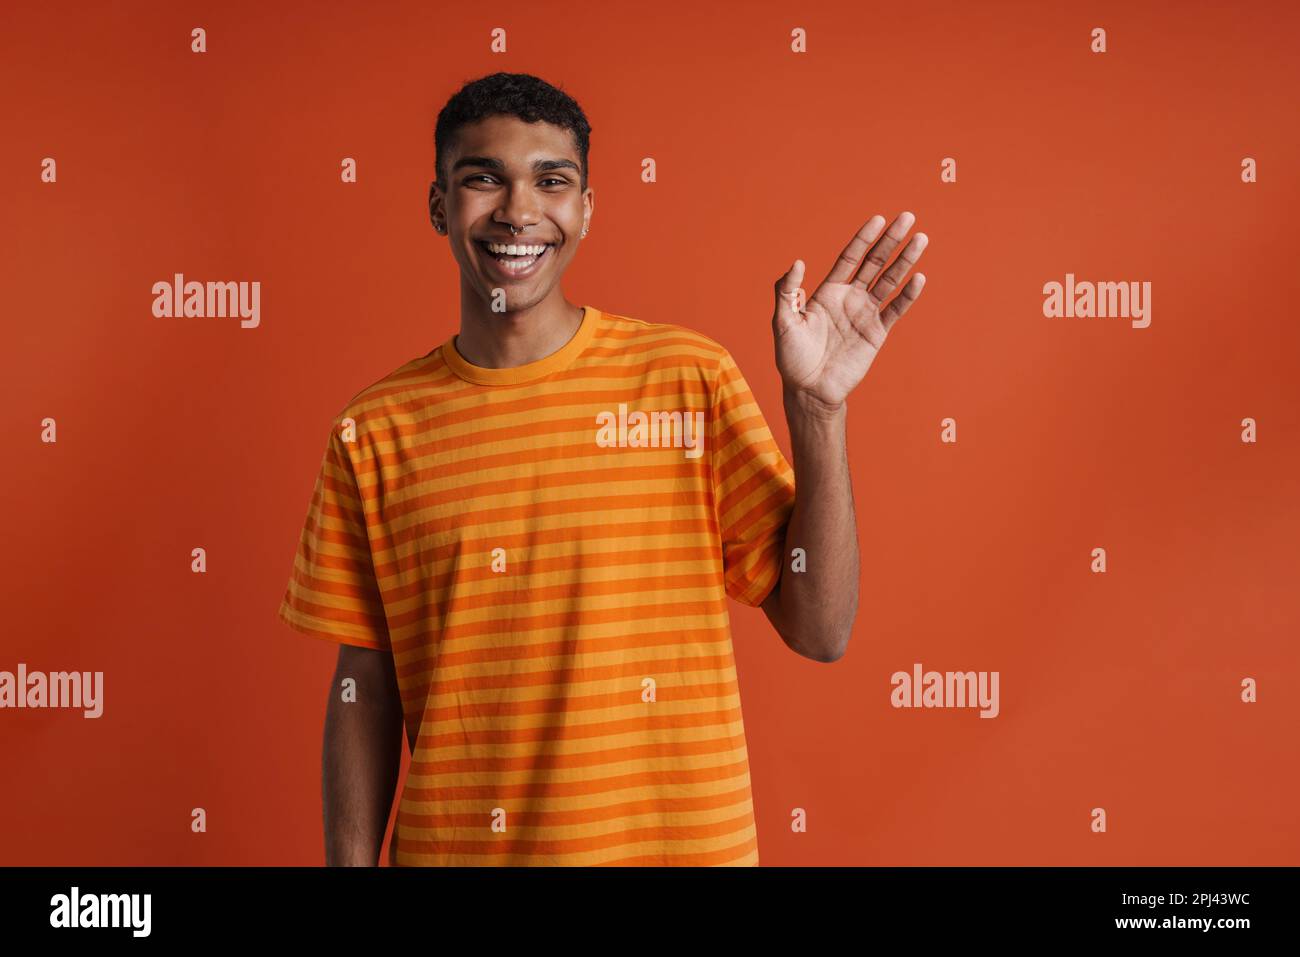 Junger, gutaussehender, glücklicher afrikanischer Mann mit Piercing, der winkte und in die Kamera schaute, während er über einem isolierten orangefarbenen Hintergrund stand Stockfoto